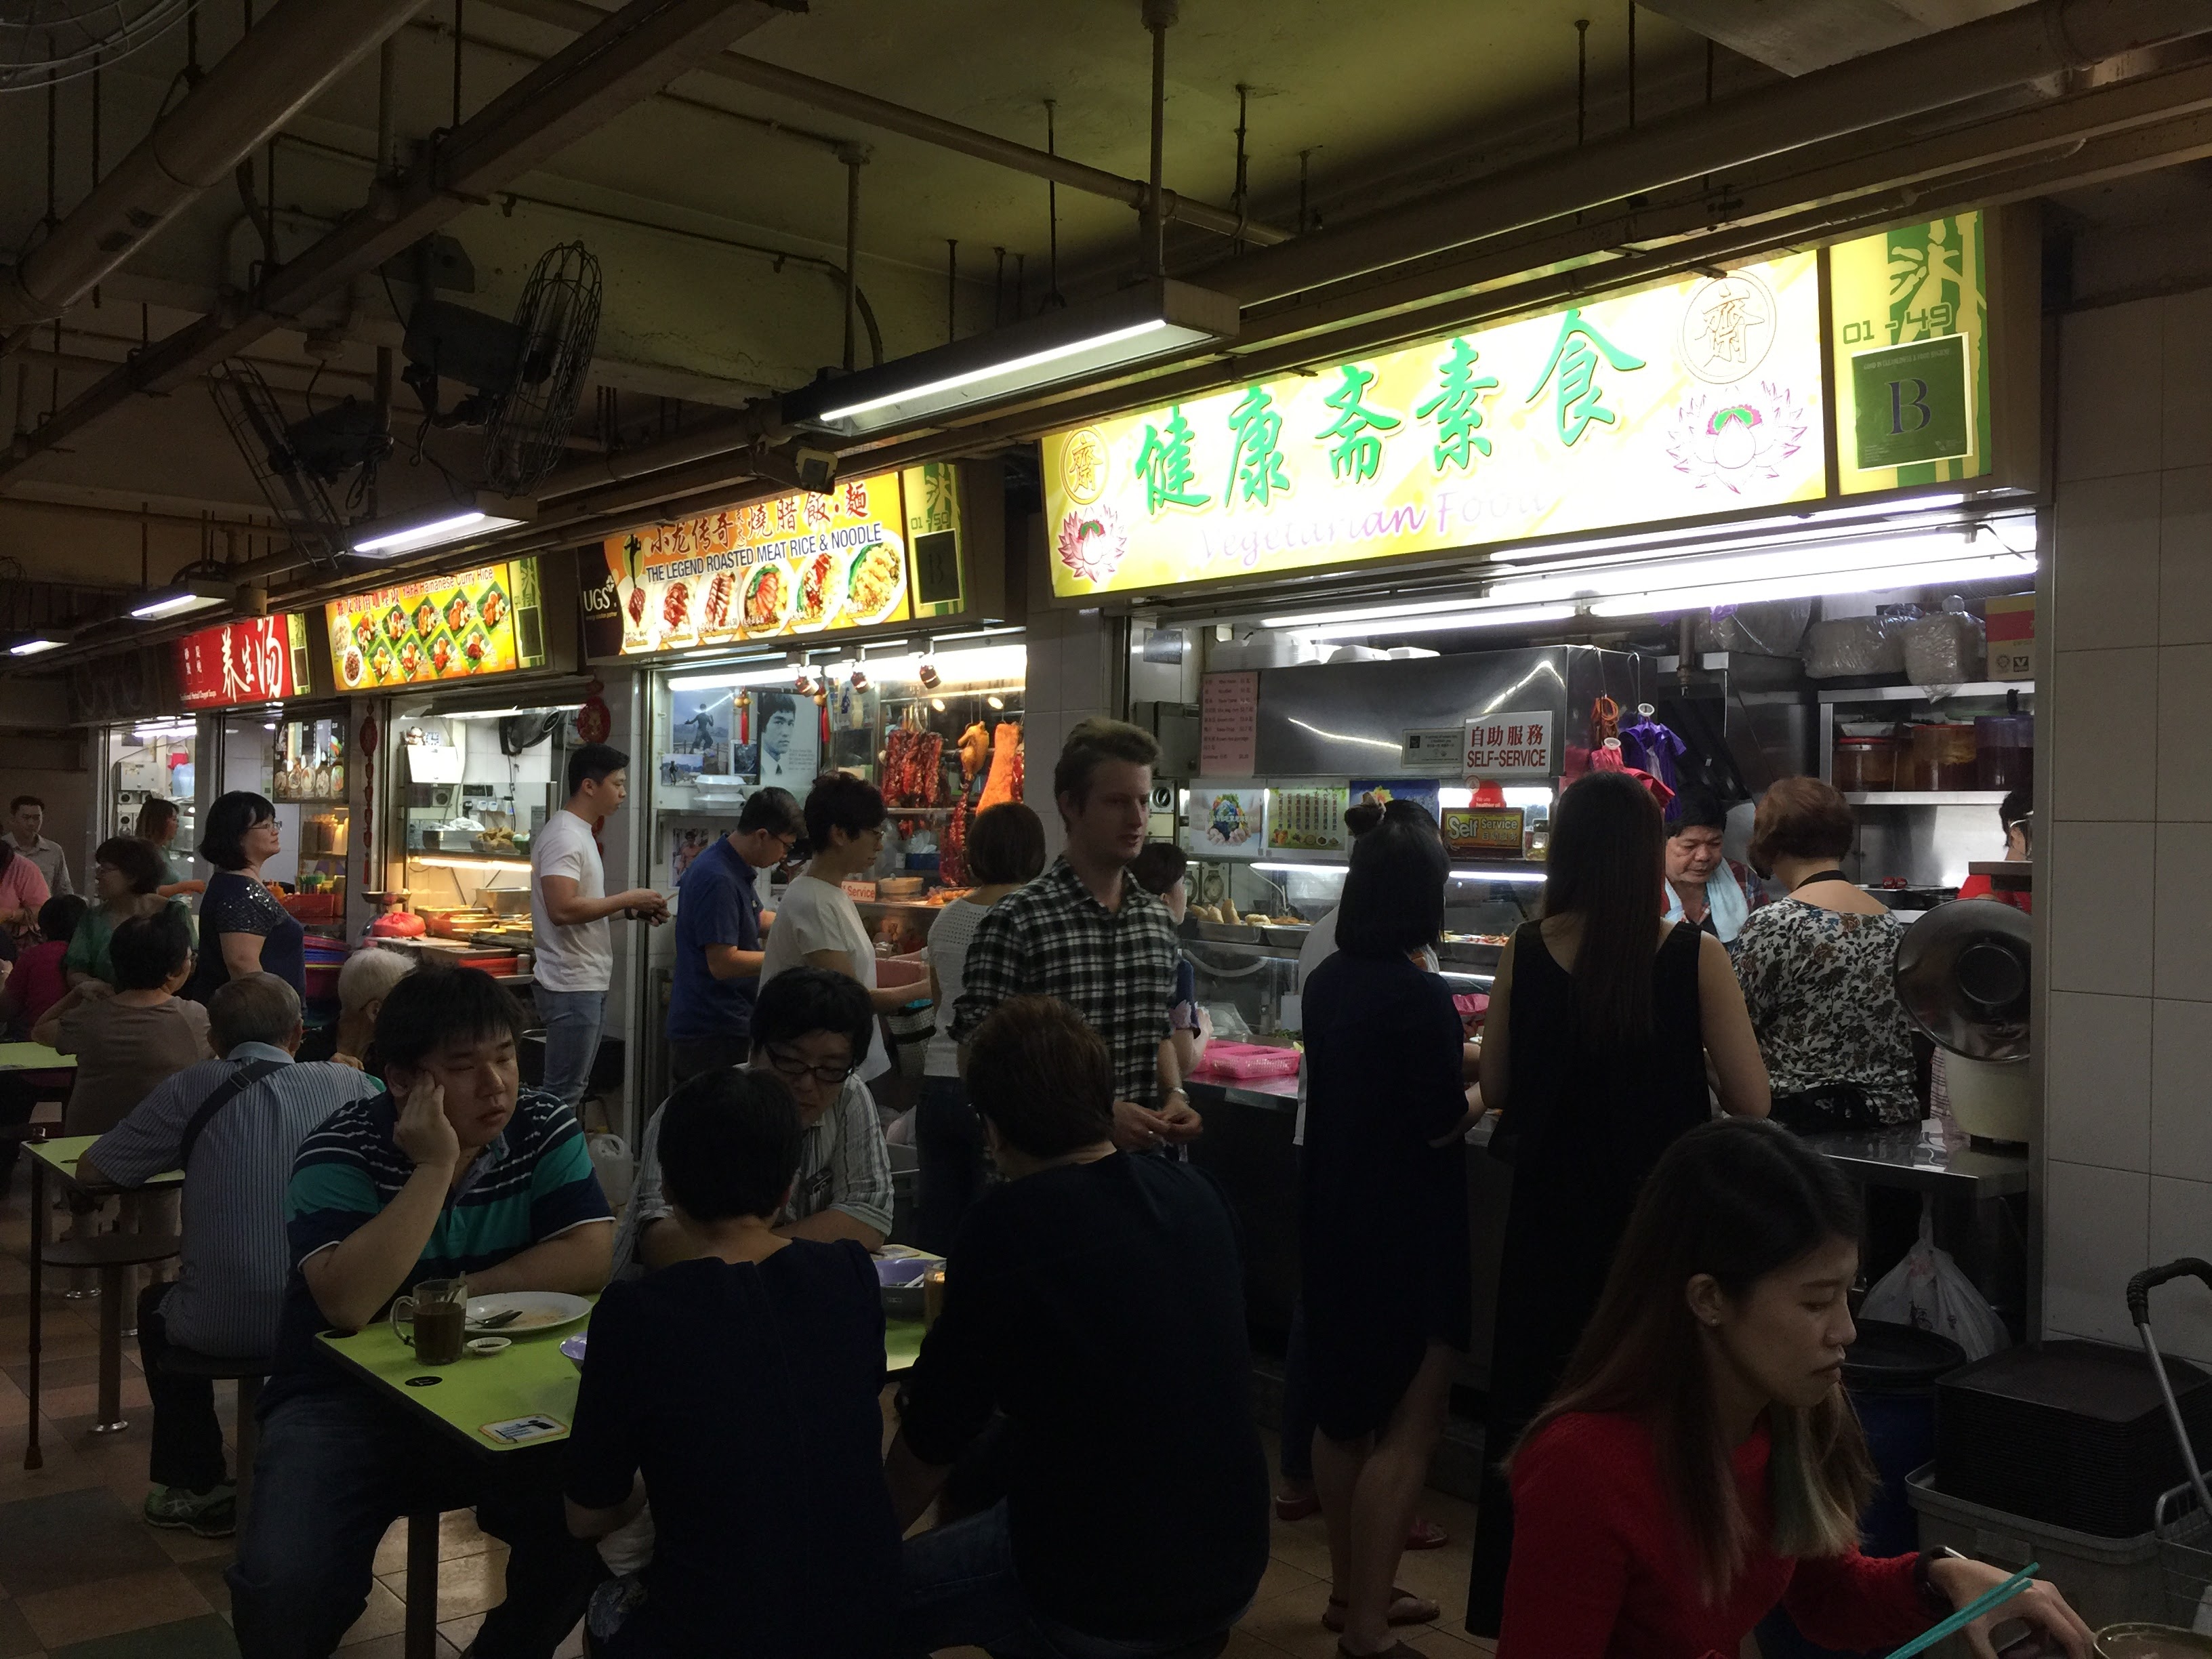 こちらはHong Lim Food Center。超行列しているストールが何件もあって驚きます。